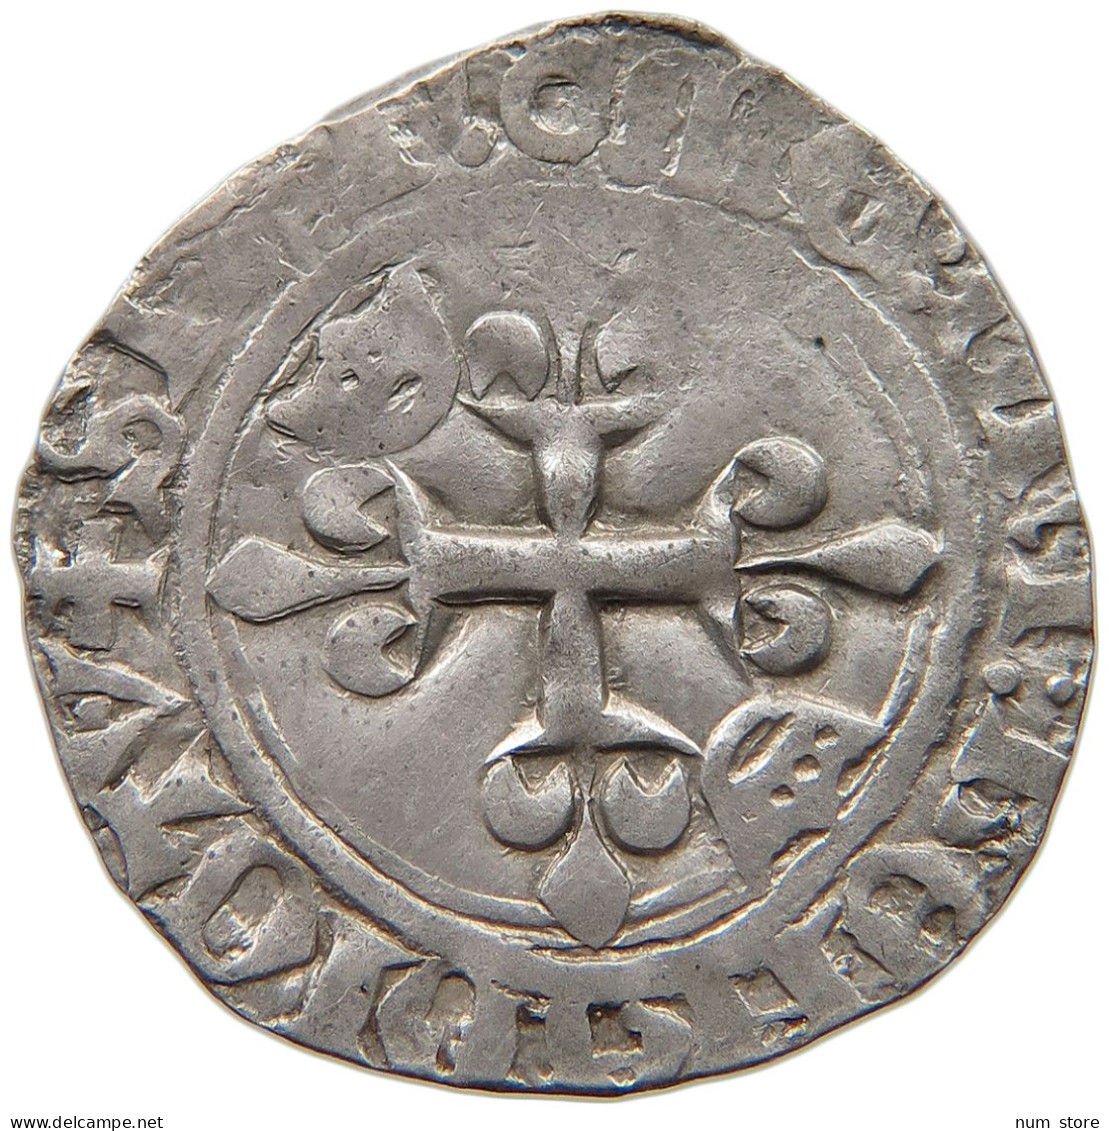 FRANCE GROS FLORETTE 1380-1422 Charles VI., 1380-1422 #t108 0305 - 1380-1422 Charles VI The Beloved